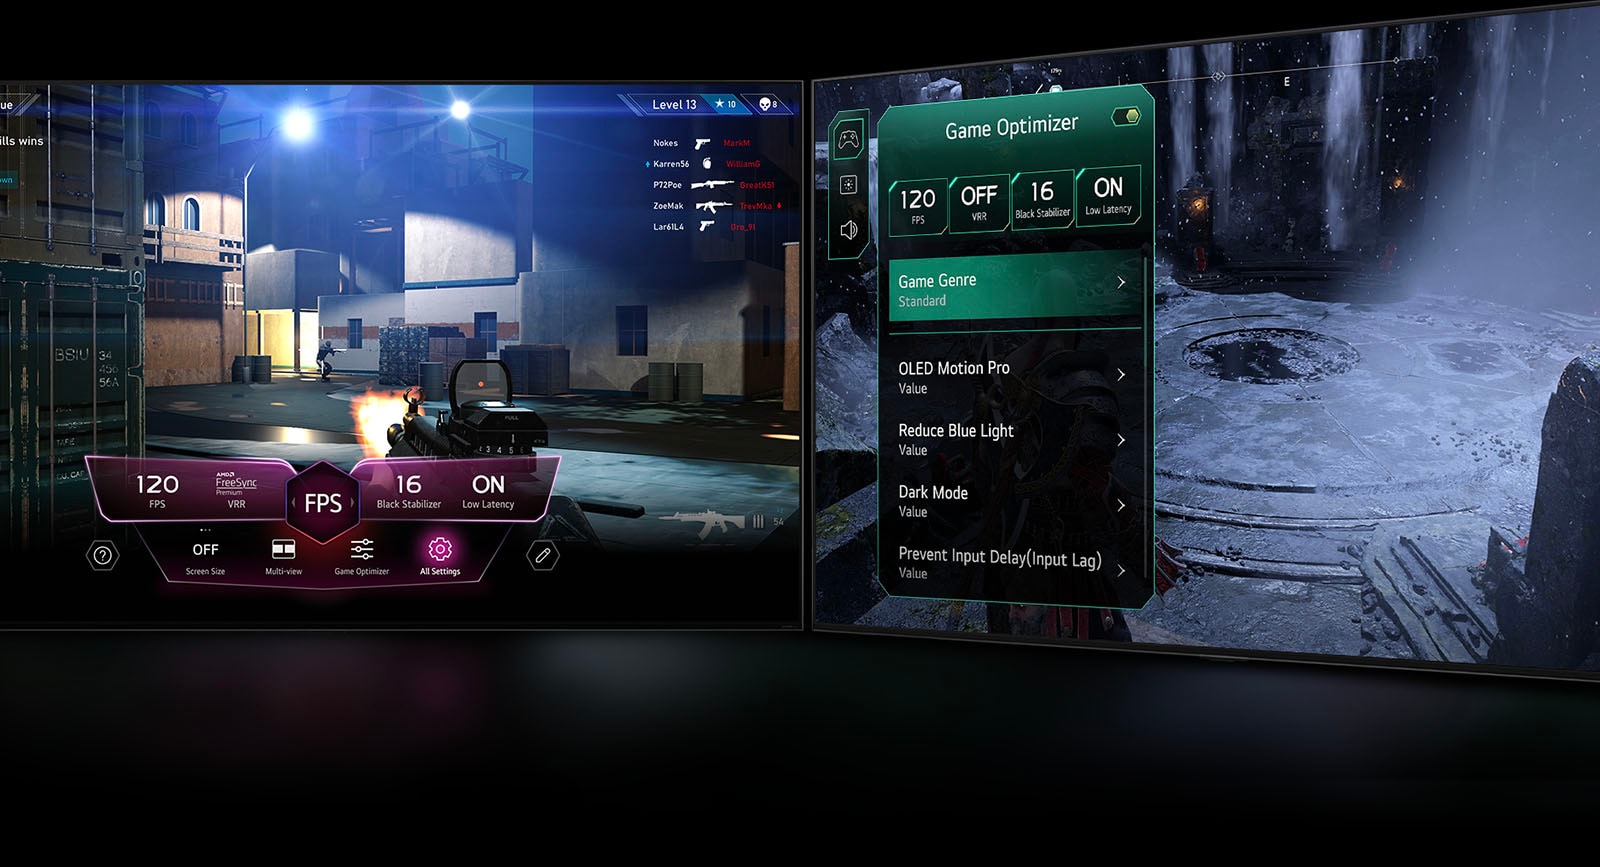 ภาพฉากการเล่นเกมสองฉาก รายการหนึ่งแสดงเกม FPS โดยมี Game Dashboard ปรากฏขึ้นบนหน้าจอระหว่างการเล่นเกม อีกหน้าจอหนึ่งแสดงฉากมืดในฤดูหนาวพร้อมเมนู Game Optimizer ปรากฏขึ้นเหนือเกม